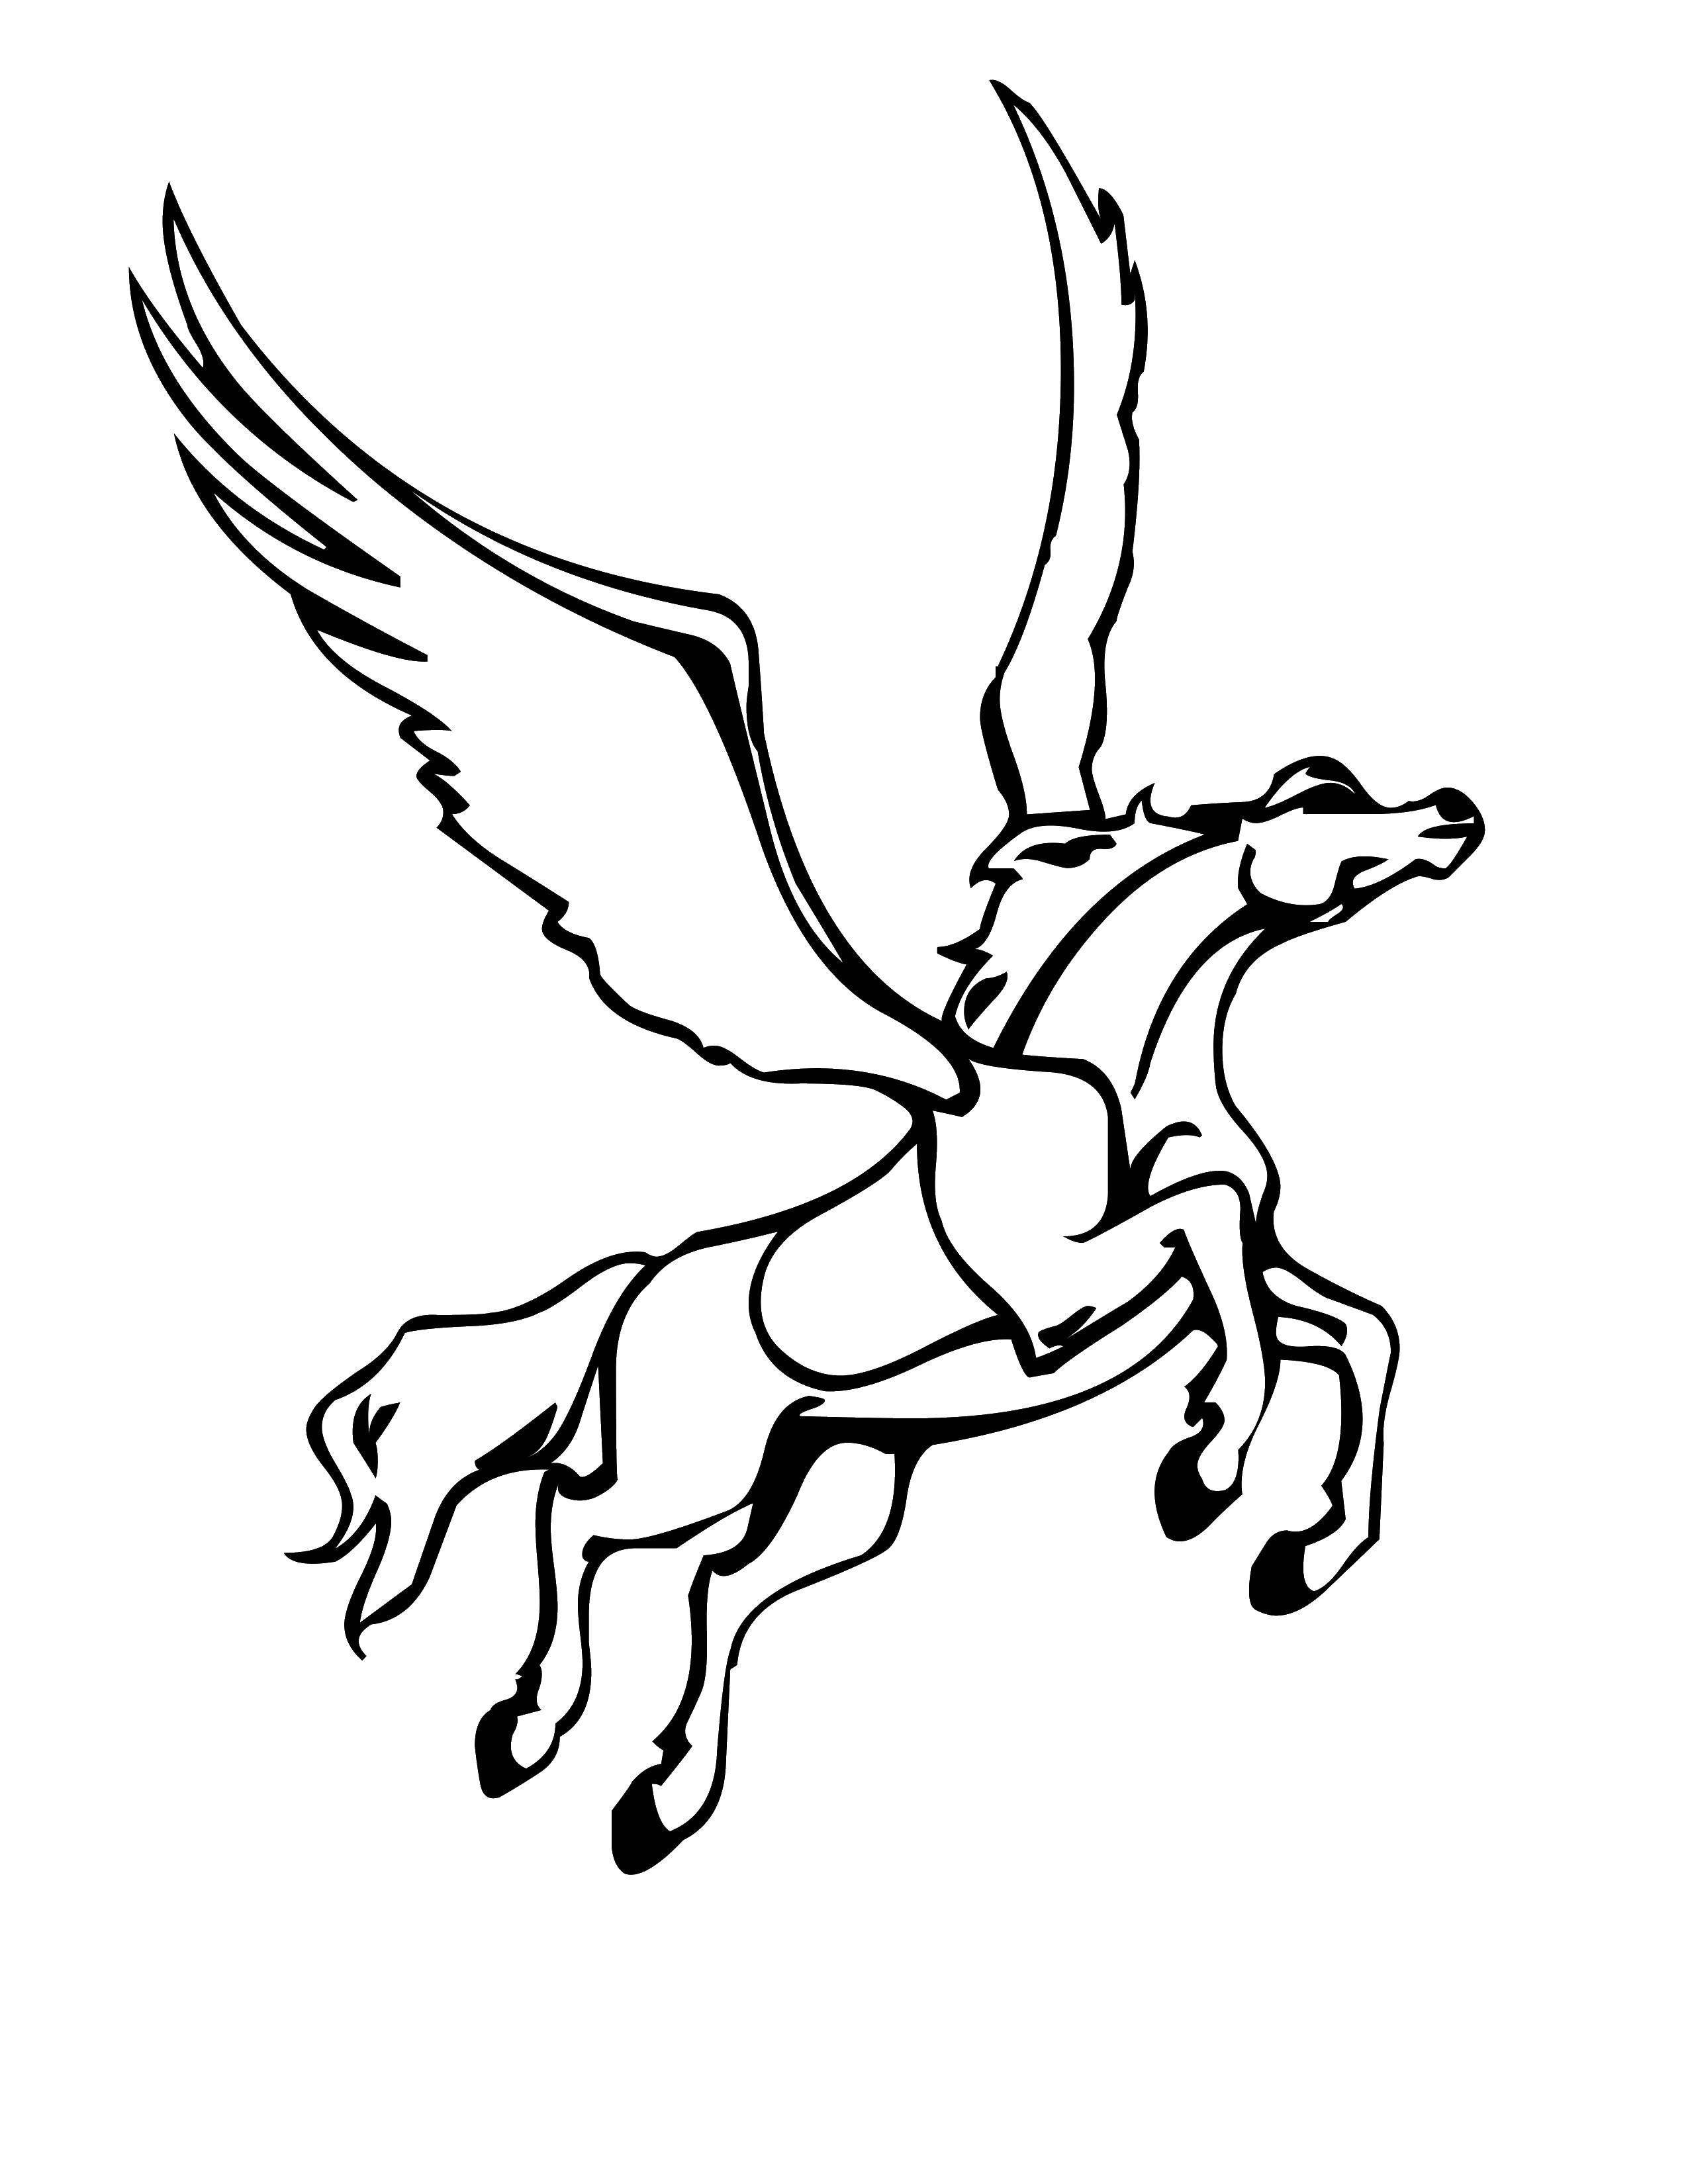 Раскраска лошадь с крыльями